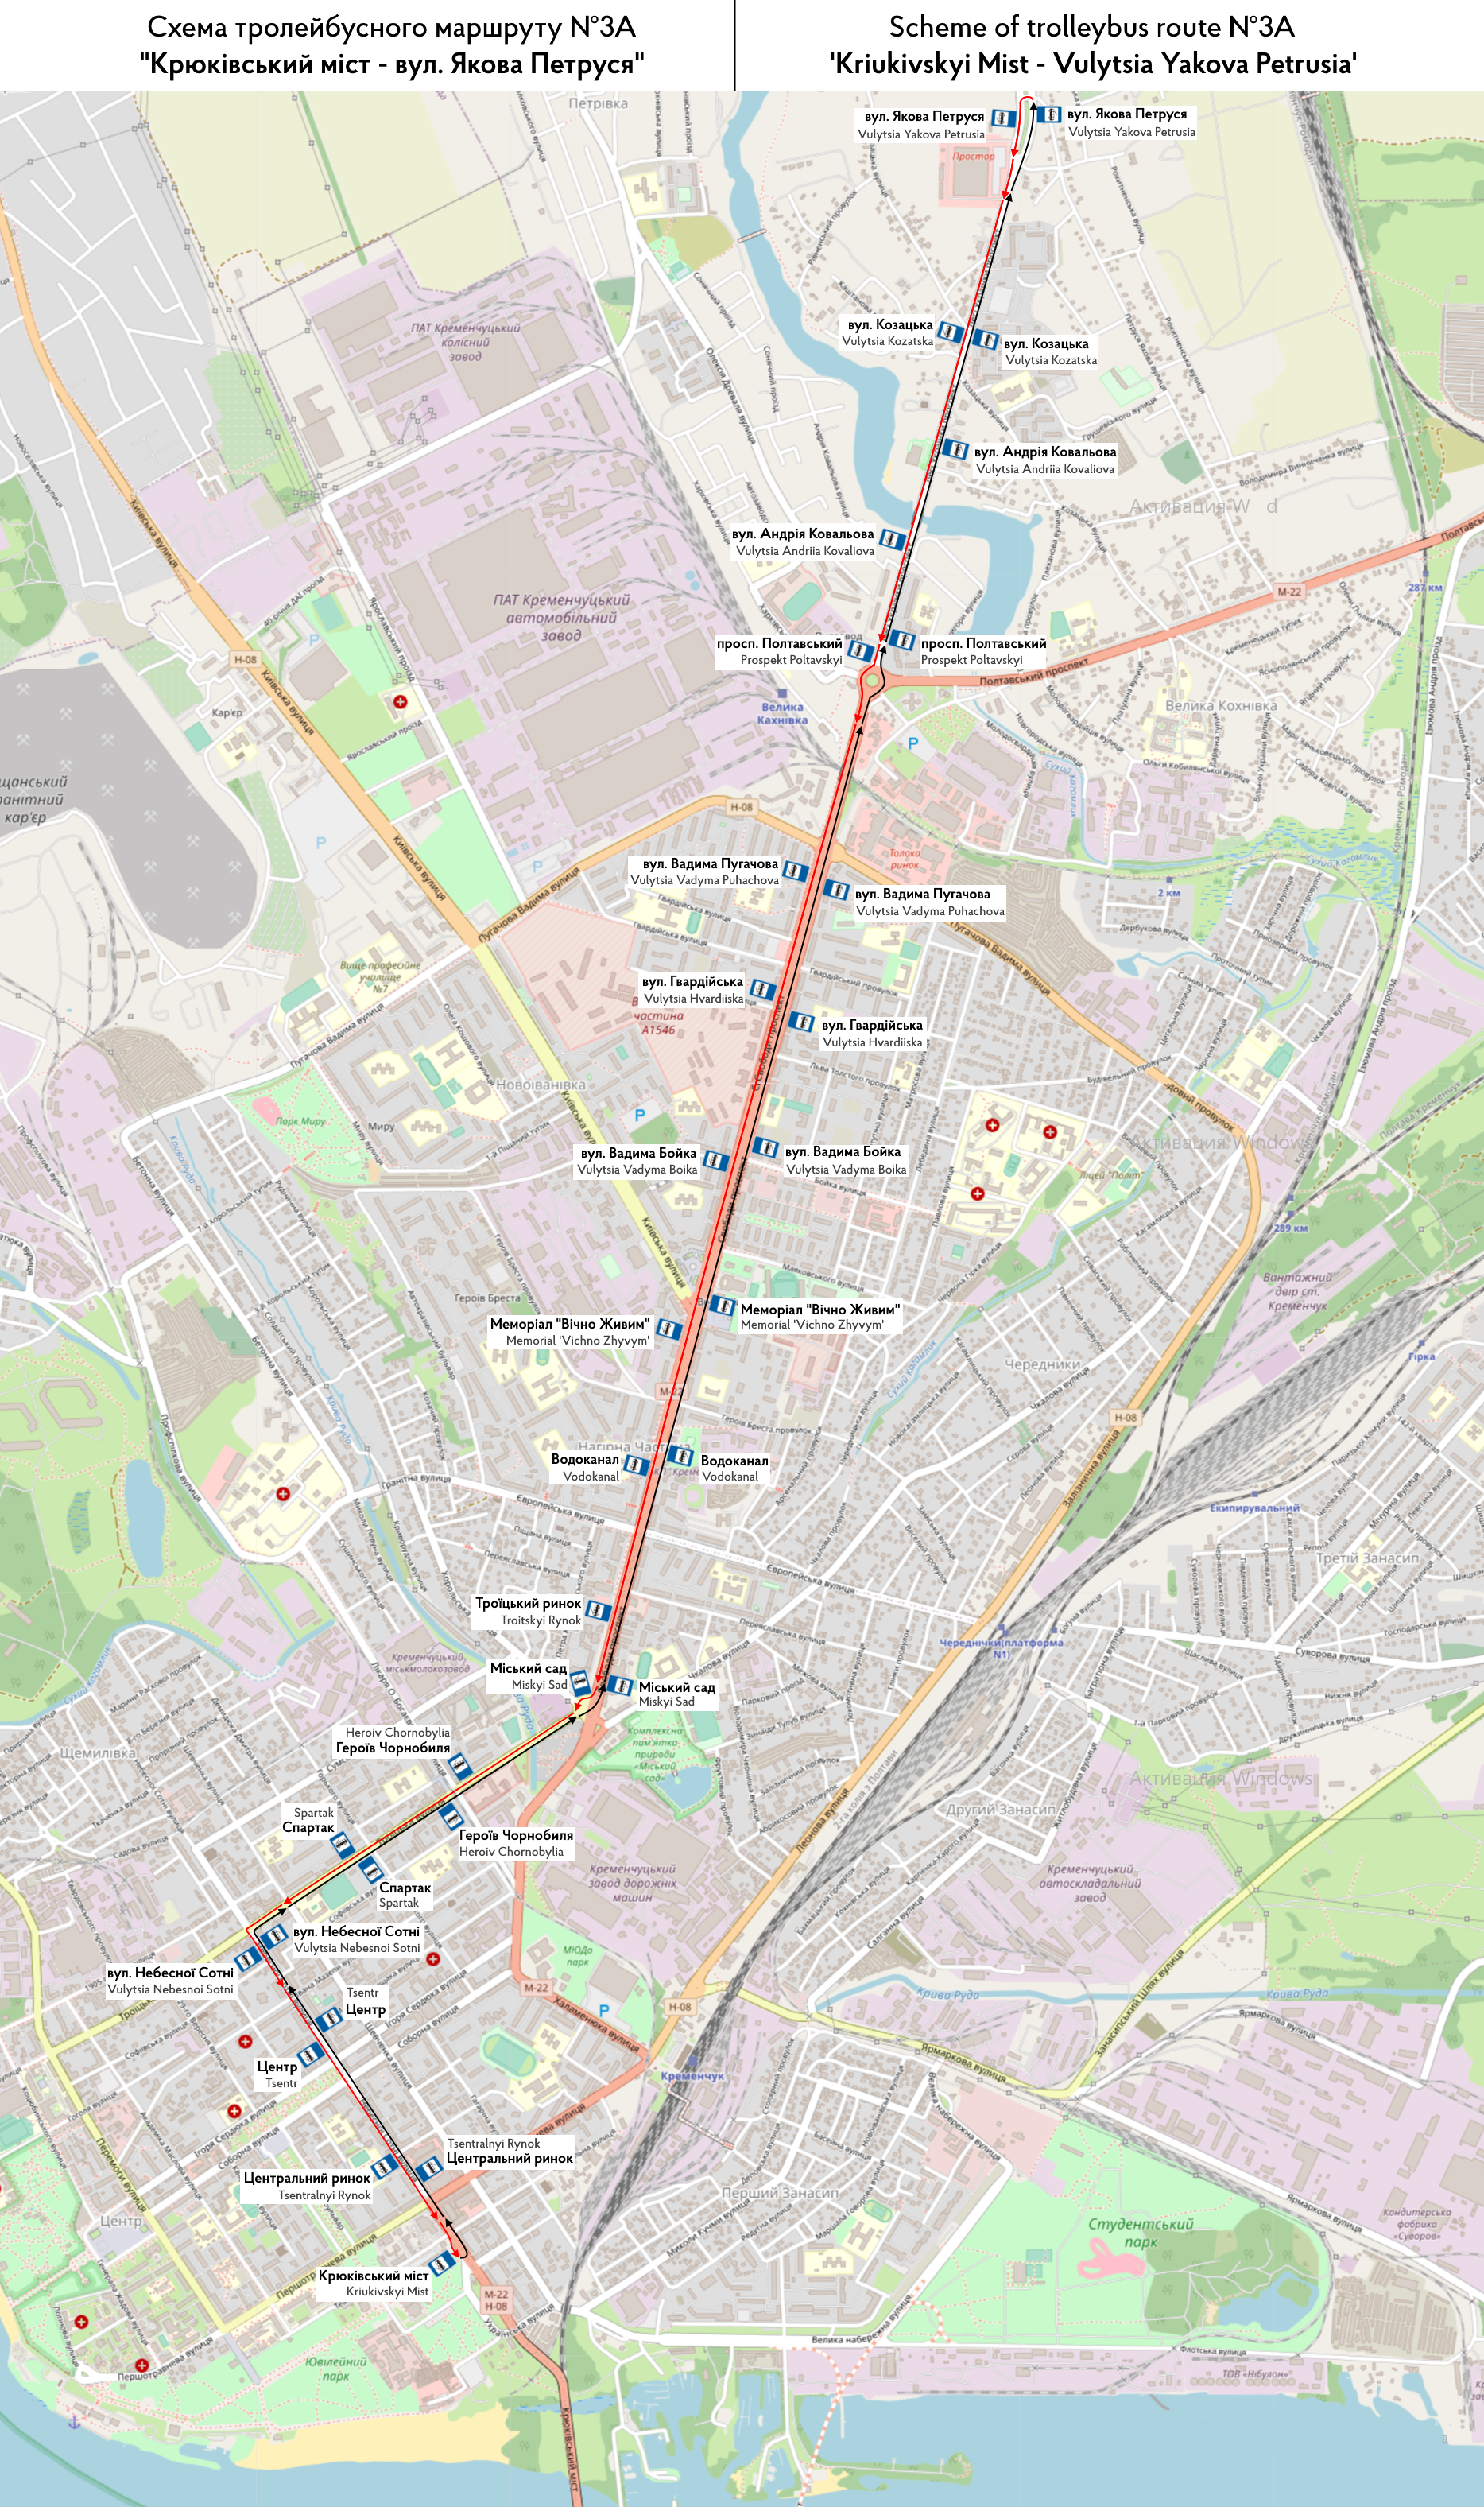 克列緬丘格 — Individual Route Maps; Maps made with OpenStreetMap